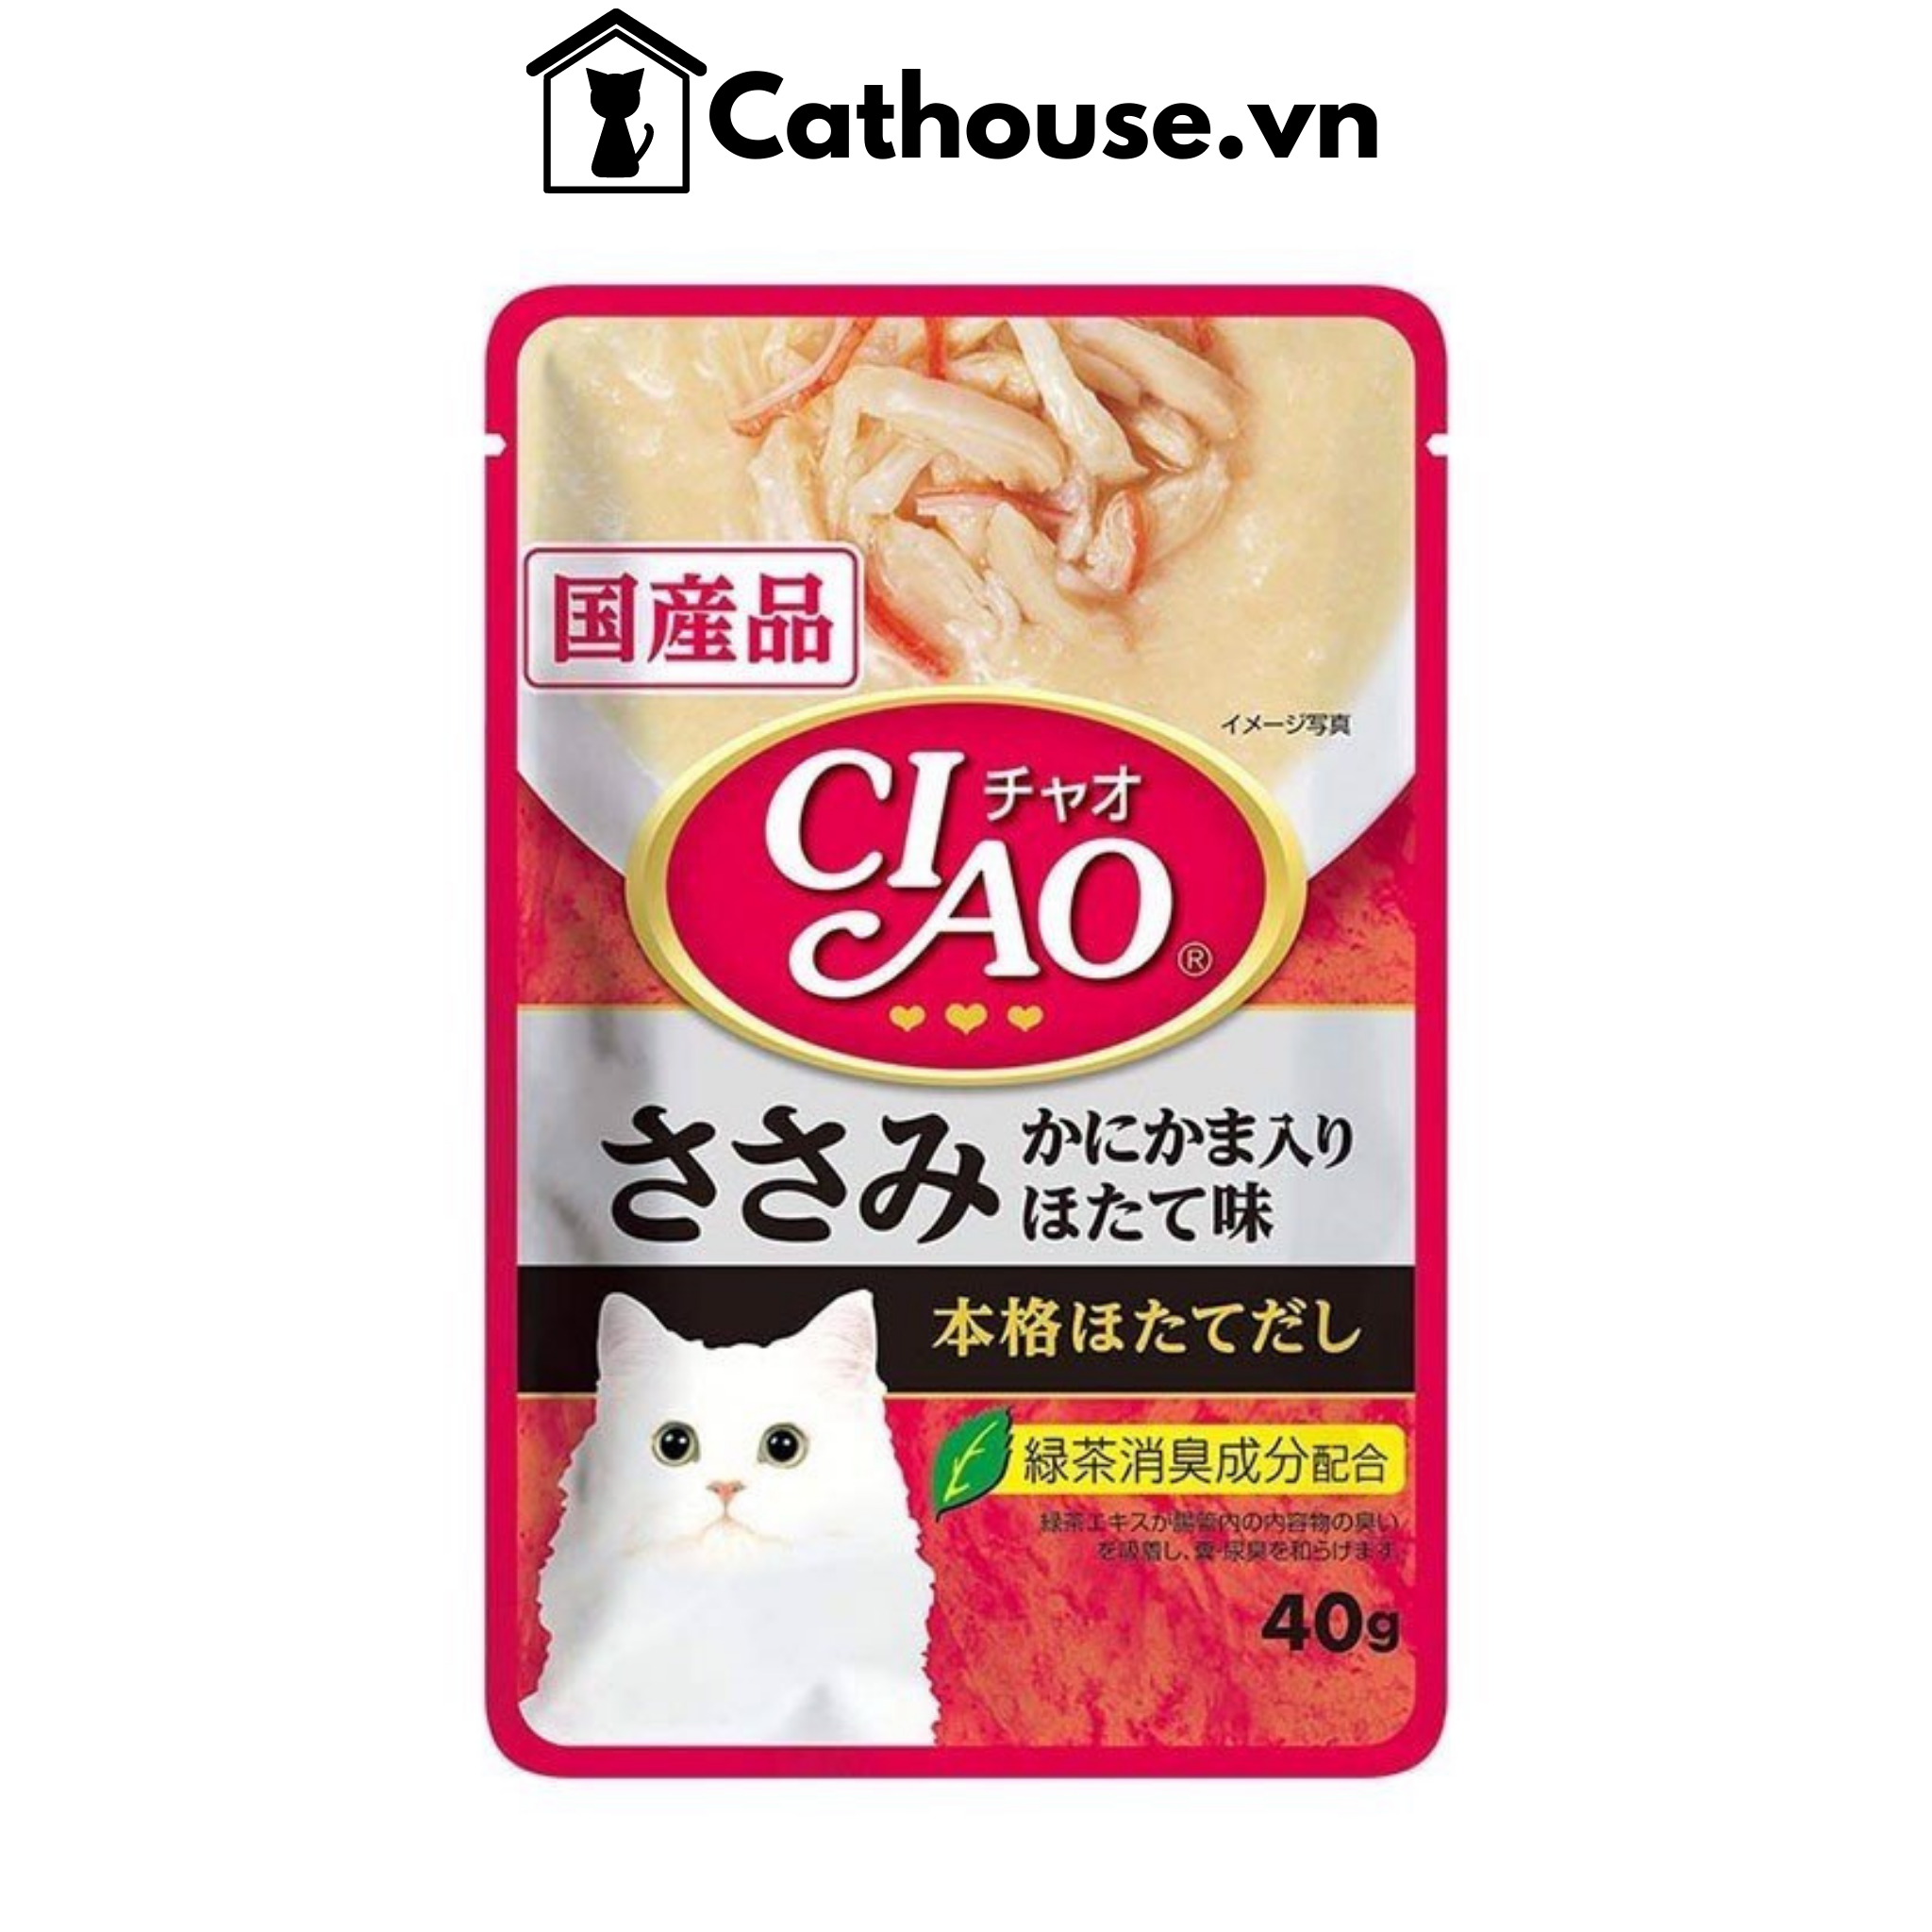  Pate Ciao Soup Cho Mèo Gói 40G 